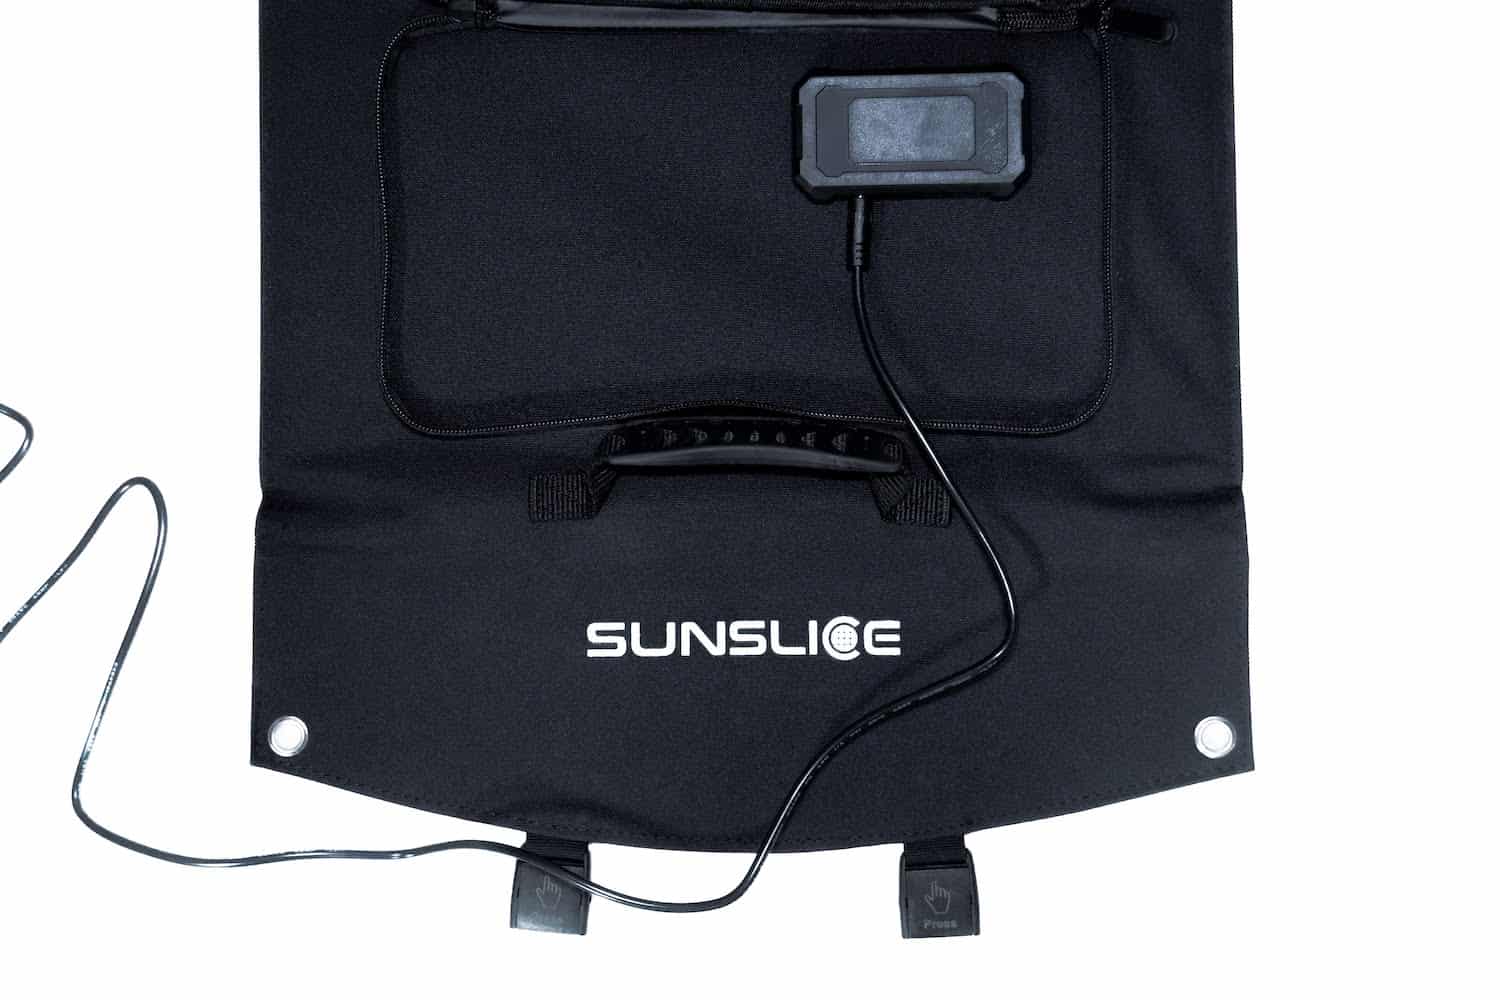 foto op witte achtergrond van een zonne-USB aangesloten op zijn opvouwbare zonnepaneel